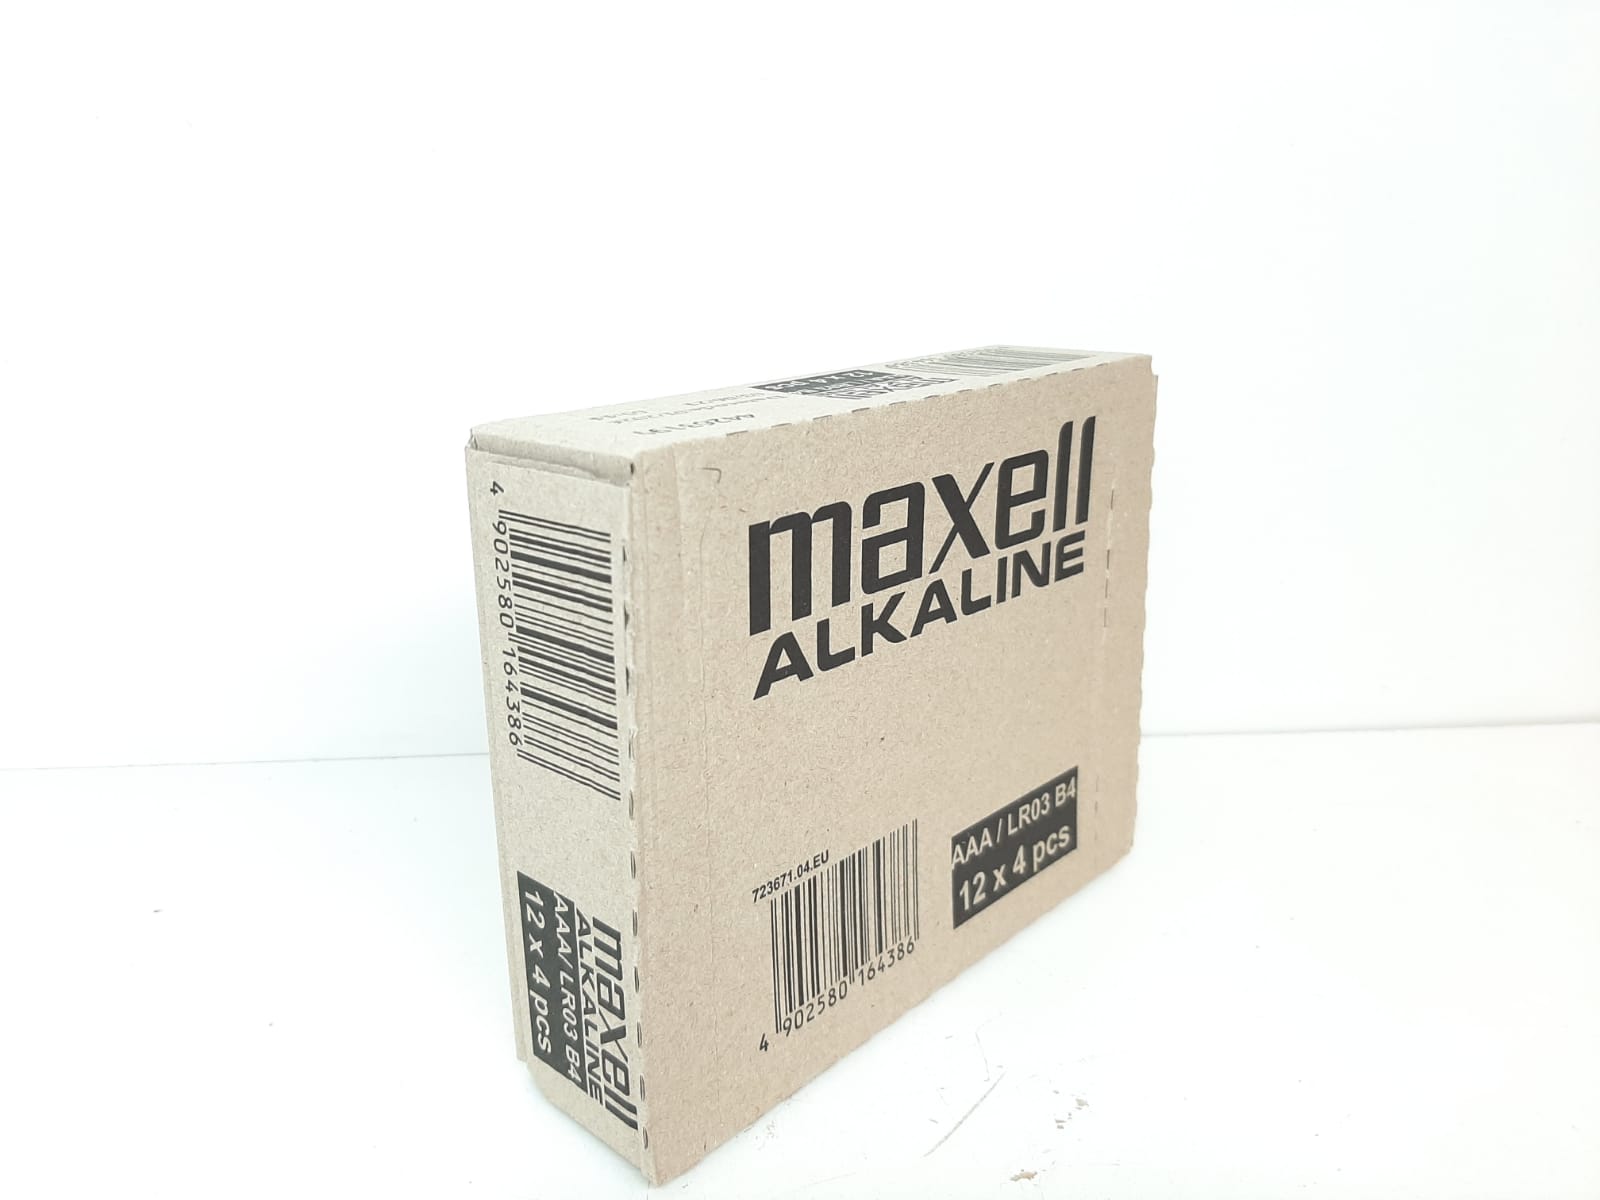 DISPLAY: Maxell AAA batterier (12x4 = 48 batterier)